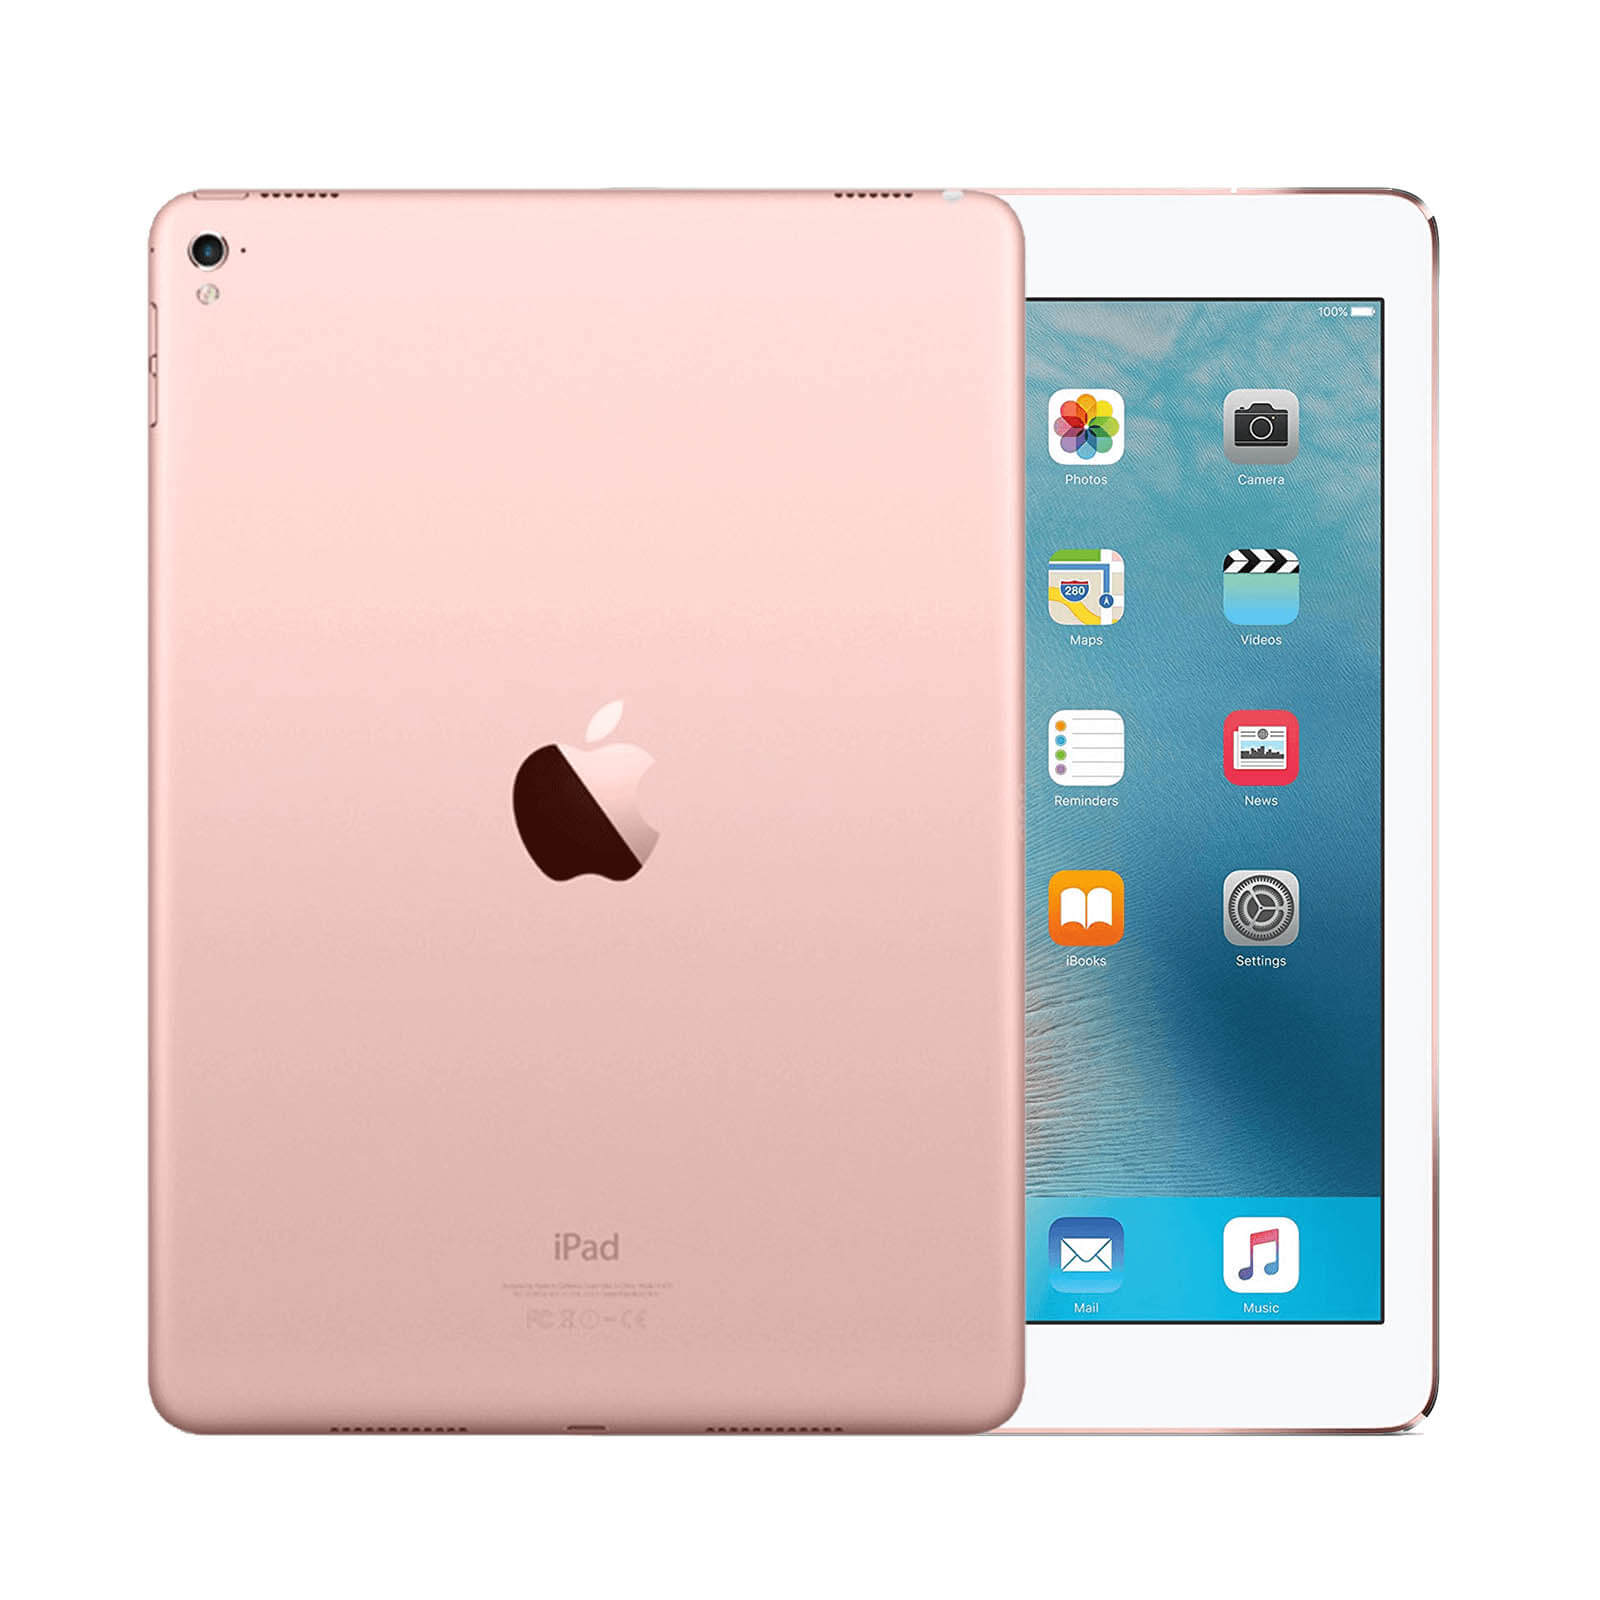 iPad Pro 9.7 Inch 128GB Rose Gold Good - WiFi